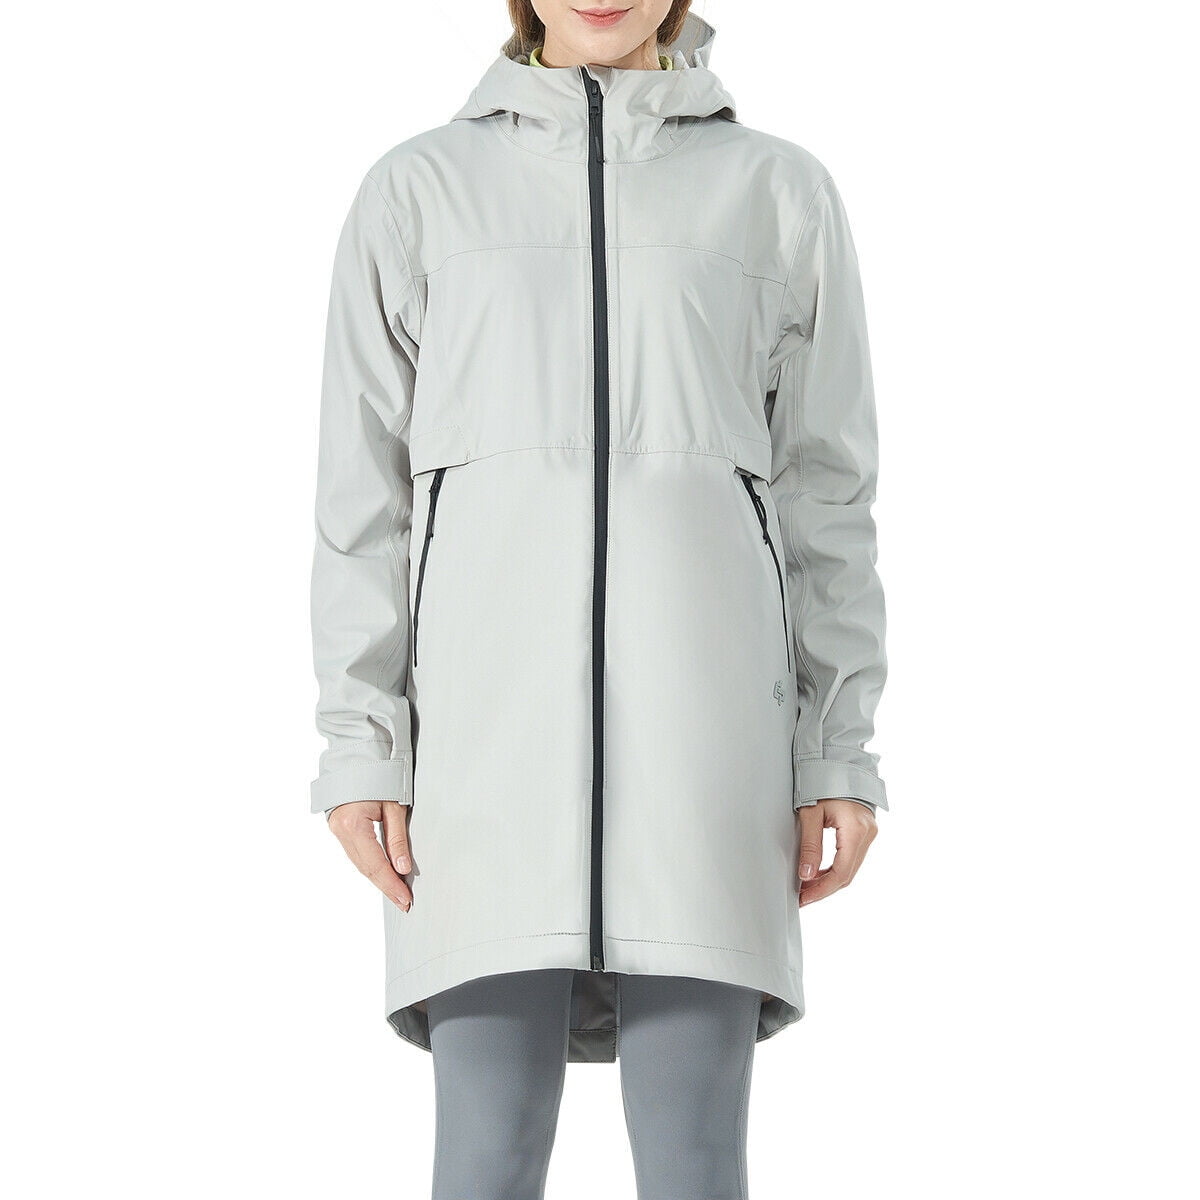 Rainproof Coat Women’s Solid Outdoor Windproof Sun Protection Sportswear Rain Jackets with Hood Flap Pockets Long Sleeve Plus Size Windbreaker Sweatshirts